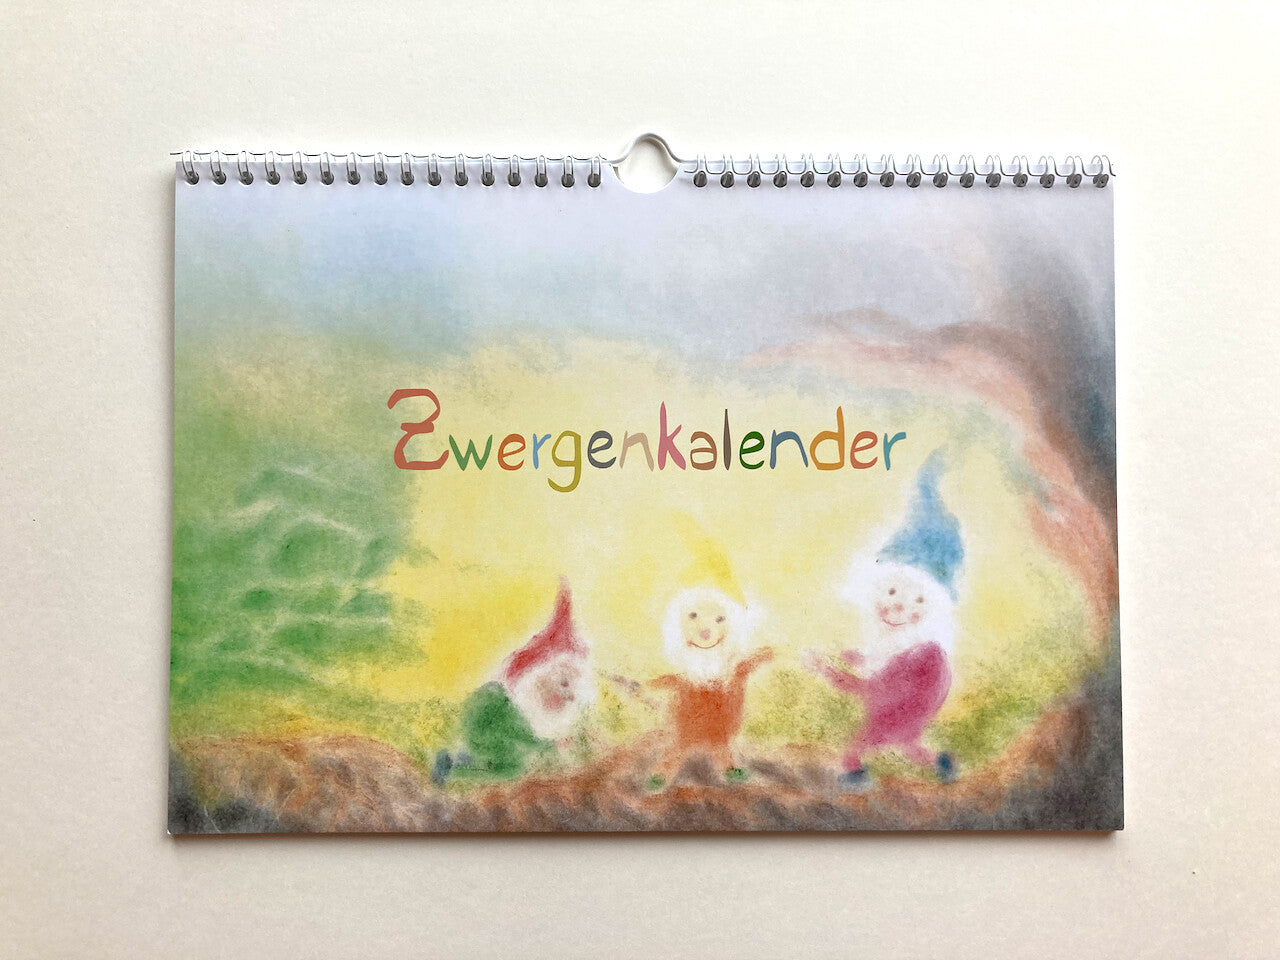 Immerwährender Zwergenkalender, in Seccorell-Technik von Andrea Reiß